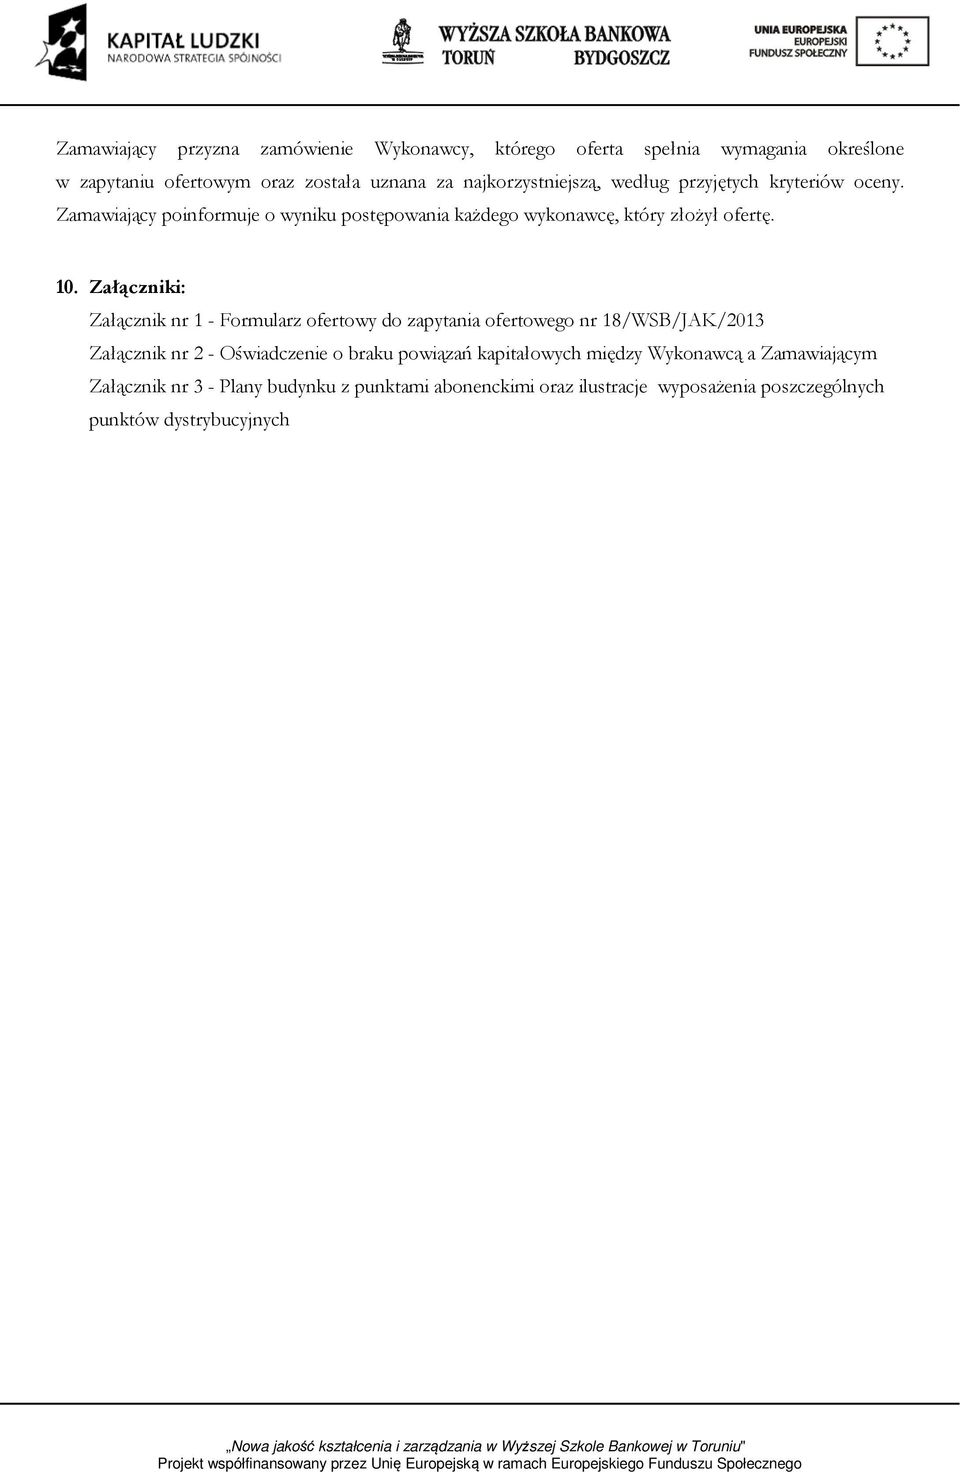 Załączniki: Załącznik nr 1 - Formularz ofertowy do zapytania ofertowego nr 18/WSB/JAK/2013 Załącznik nr 2 - Oświadczenie o braku powiązań